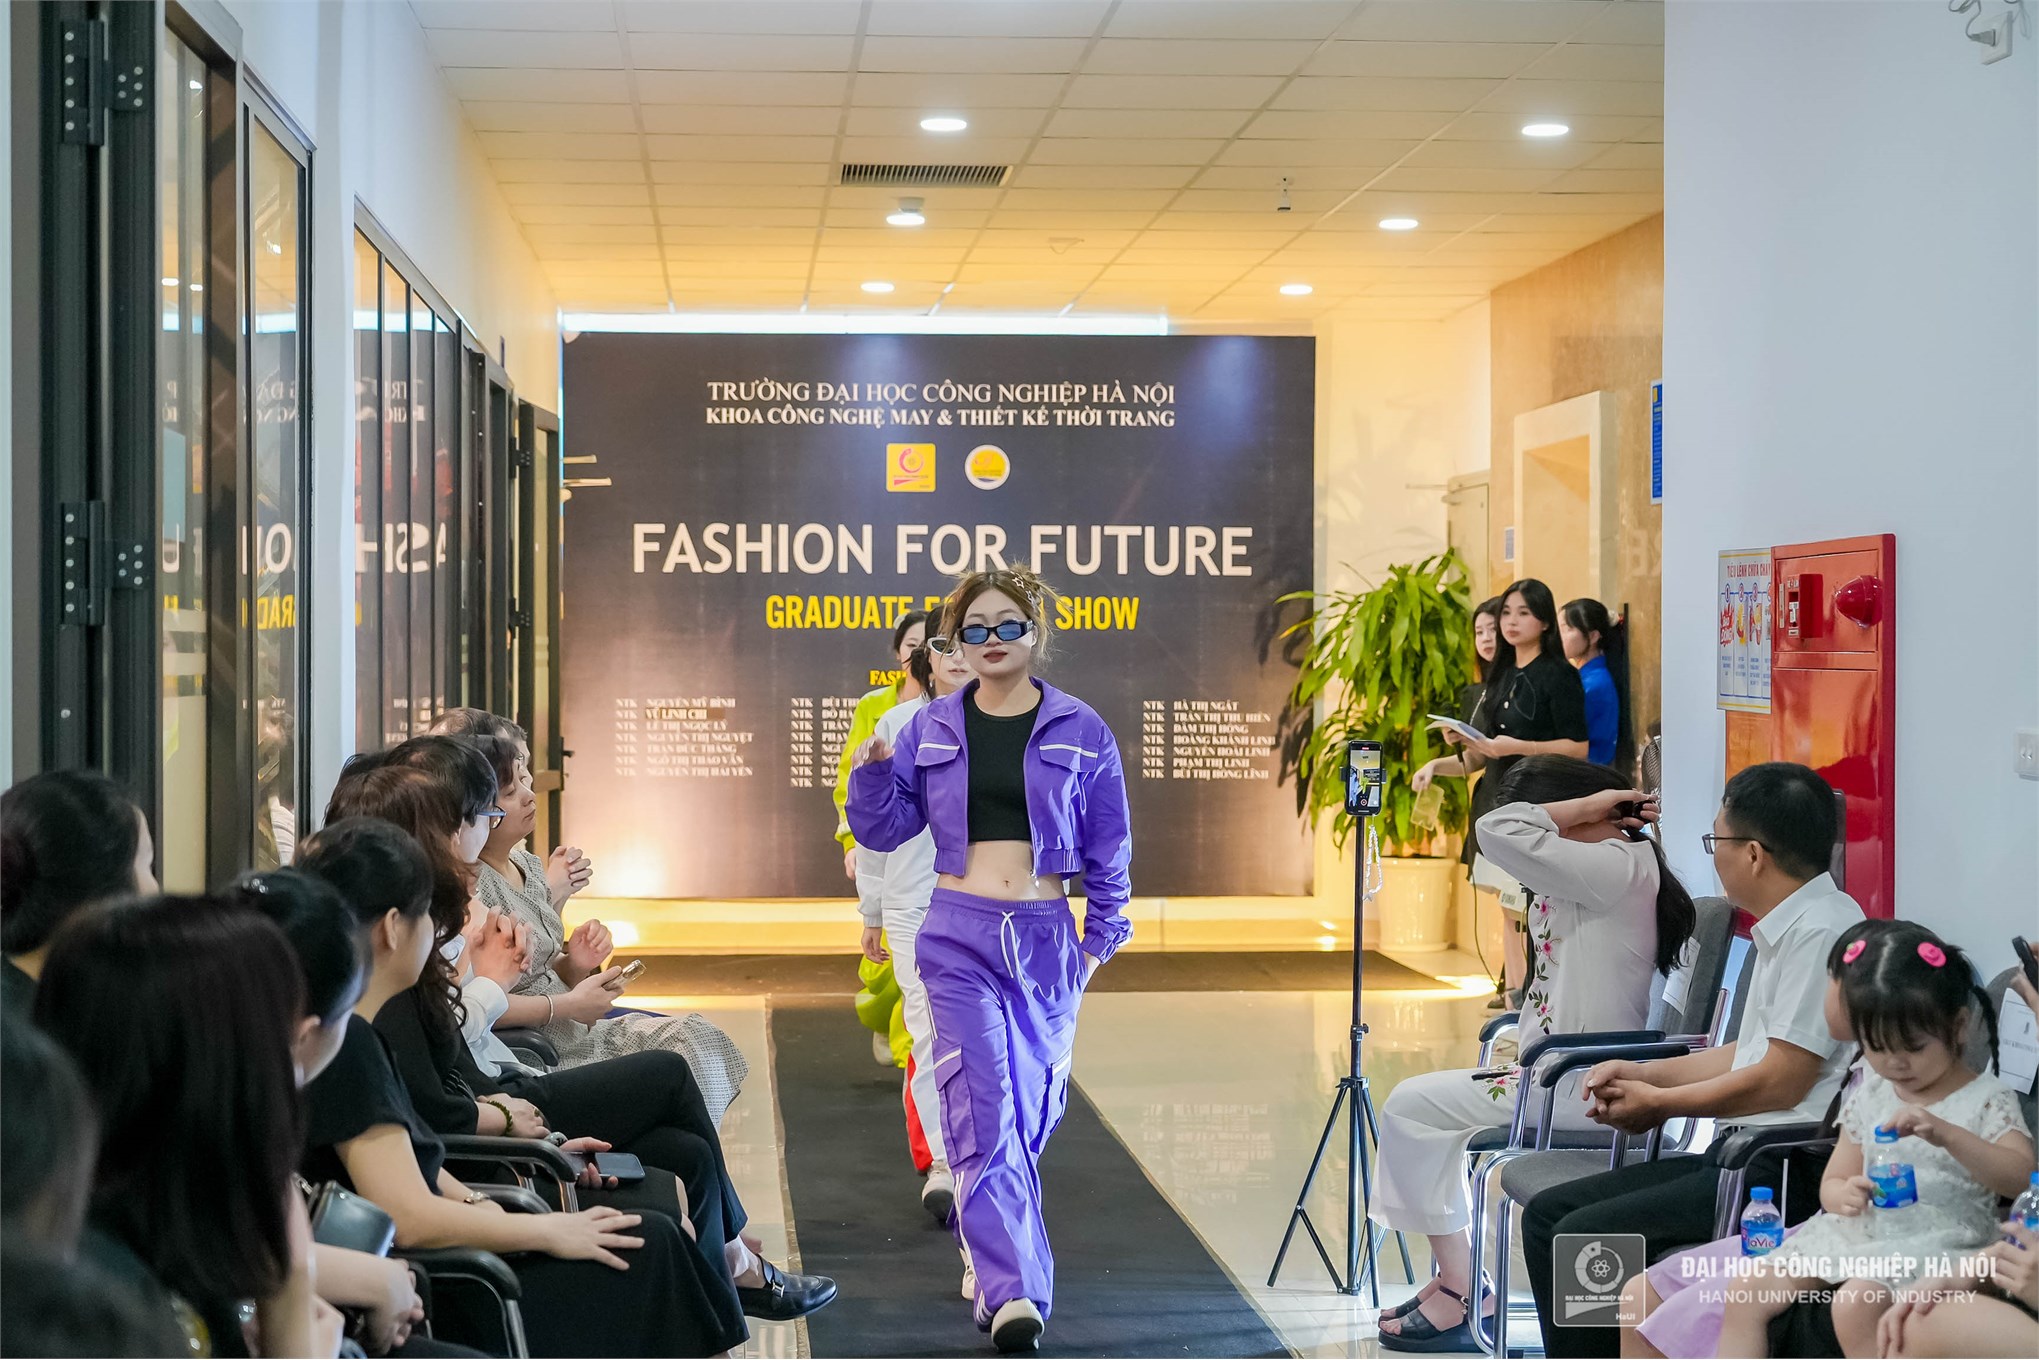 Mãn nhãn với show thời trang tốt nghiệp của sinh viên Khoa Công nghệ May và Thiết kế thời trang 